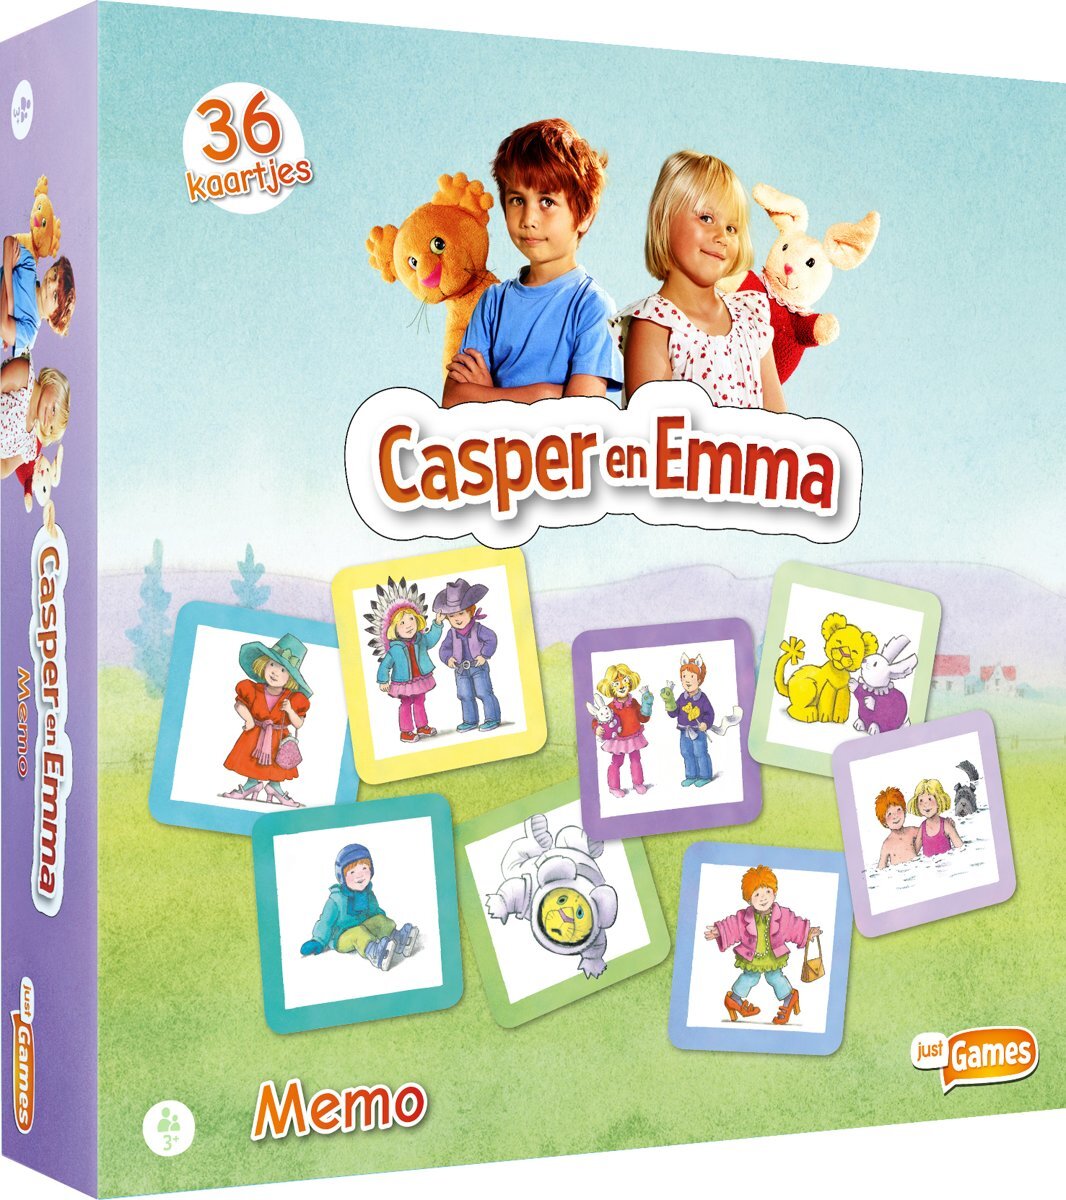 Just Games Casper en Emma - memo